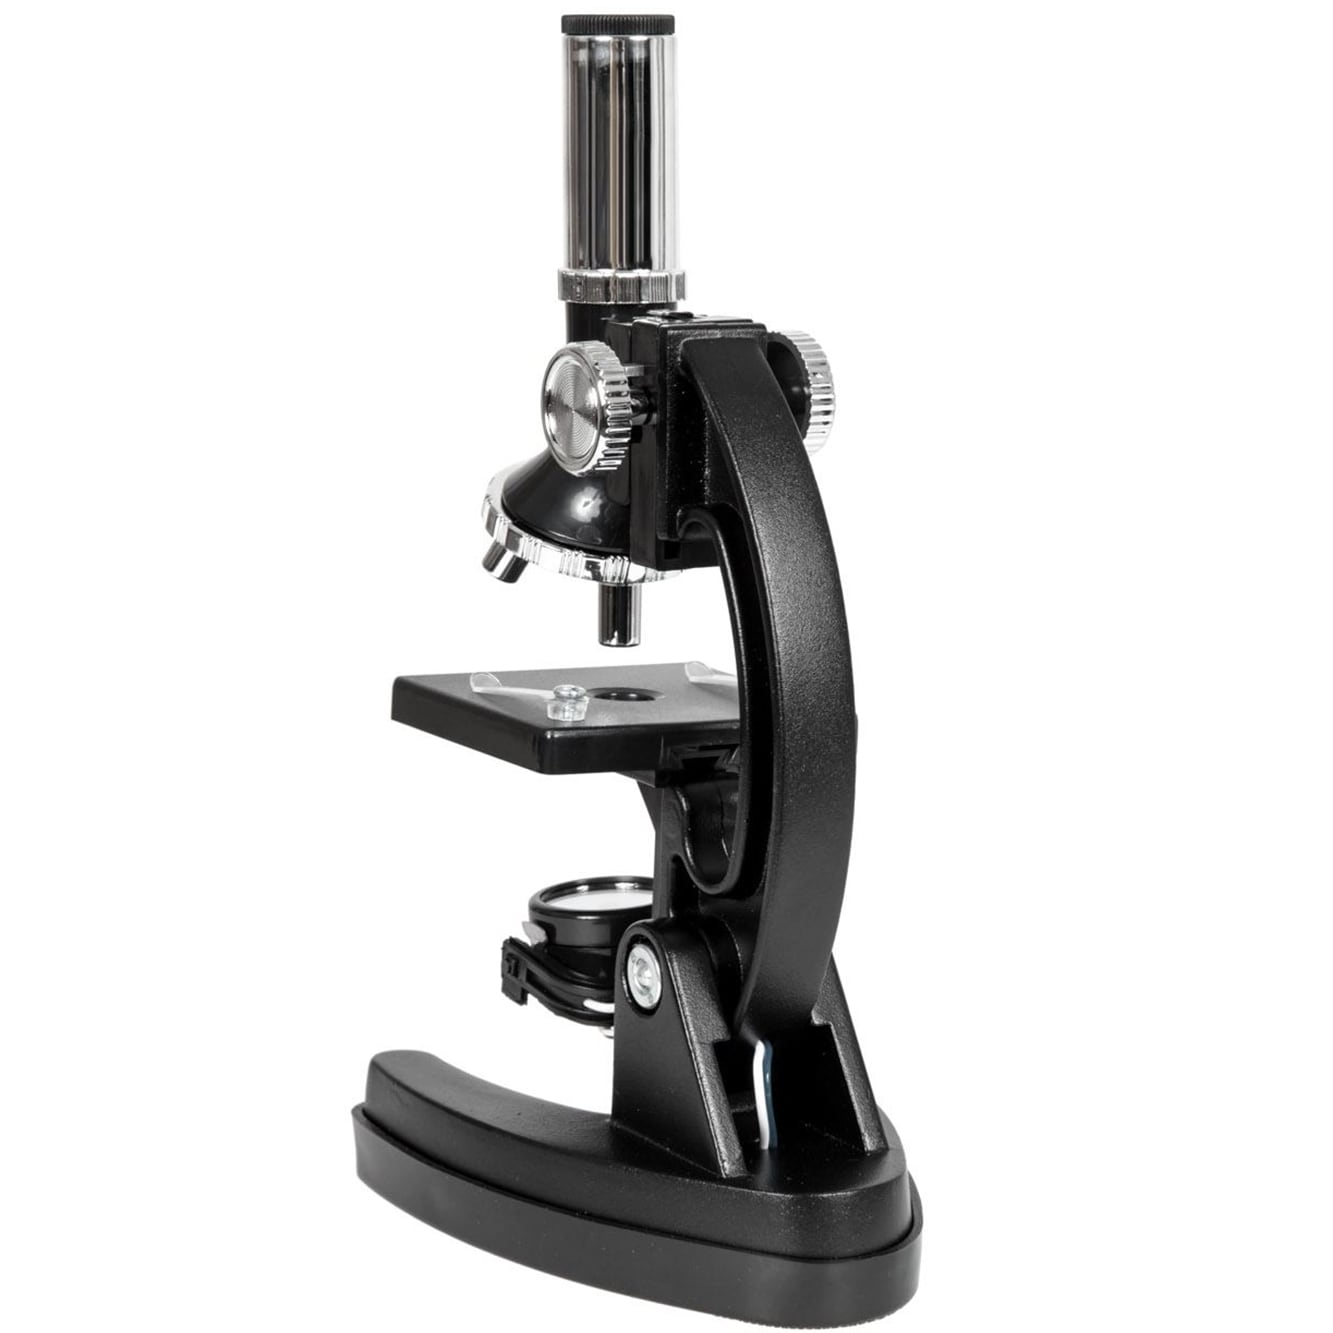 Студентський мікроскоп Opticon